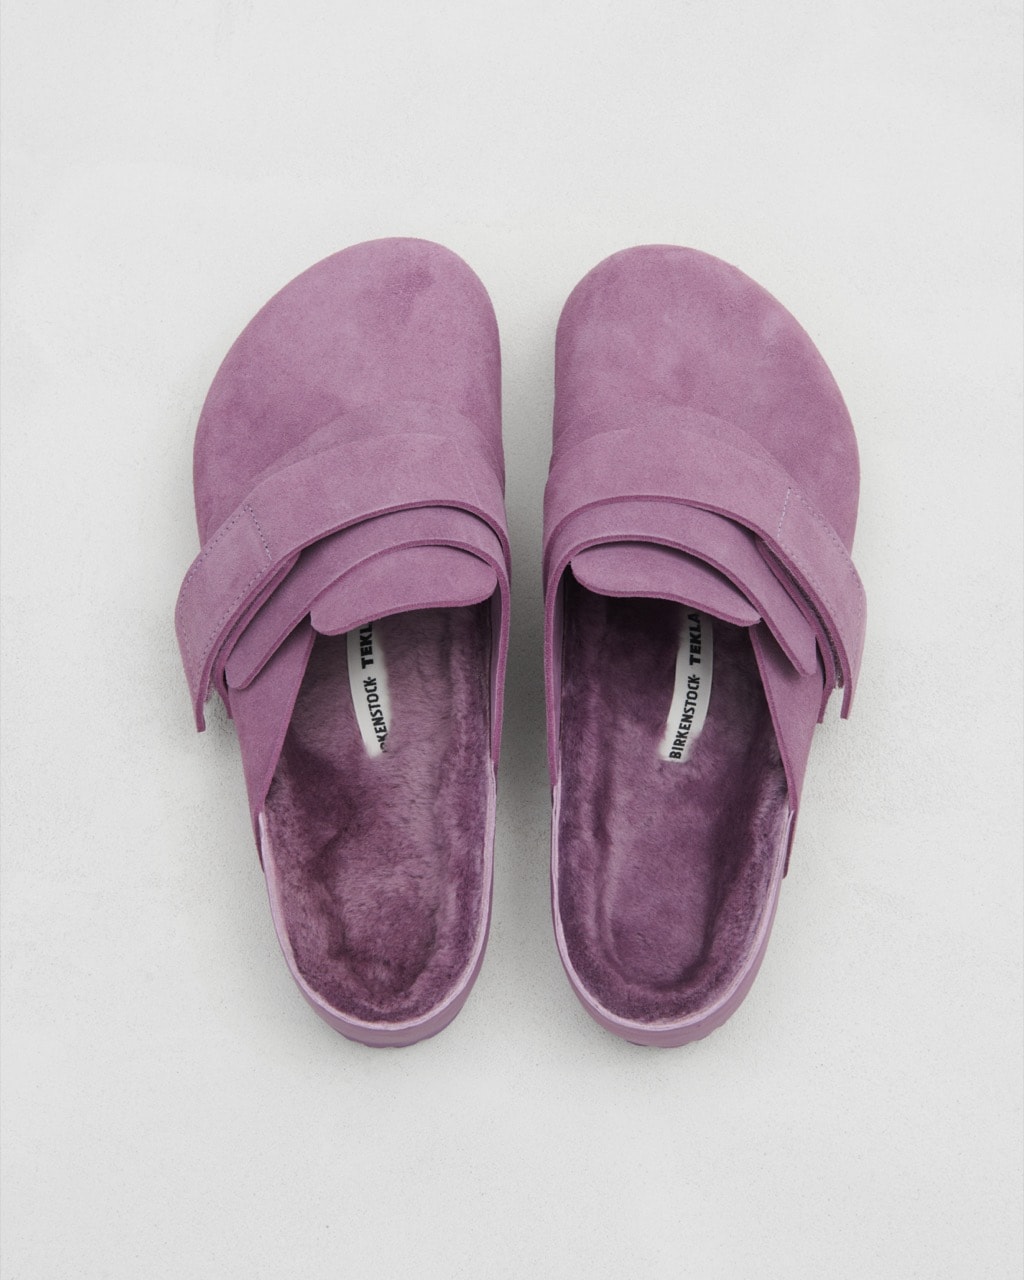 birkenstock tekla footwear sleepwear shoes cozy 